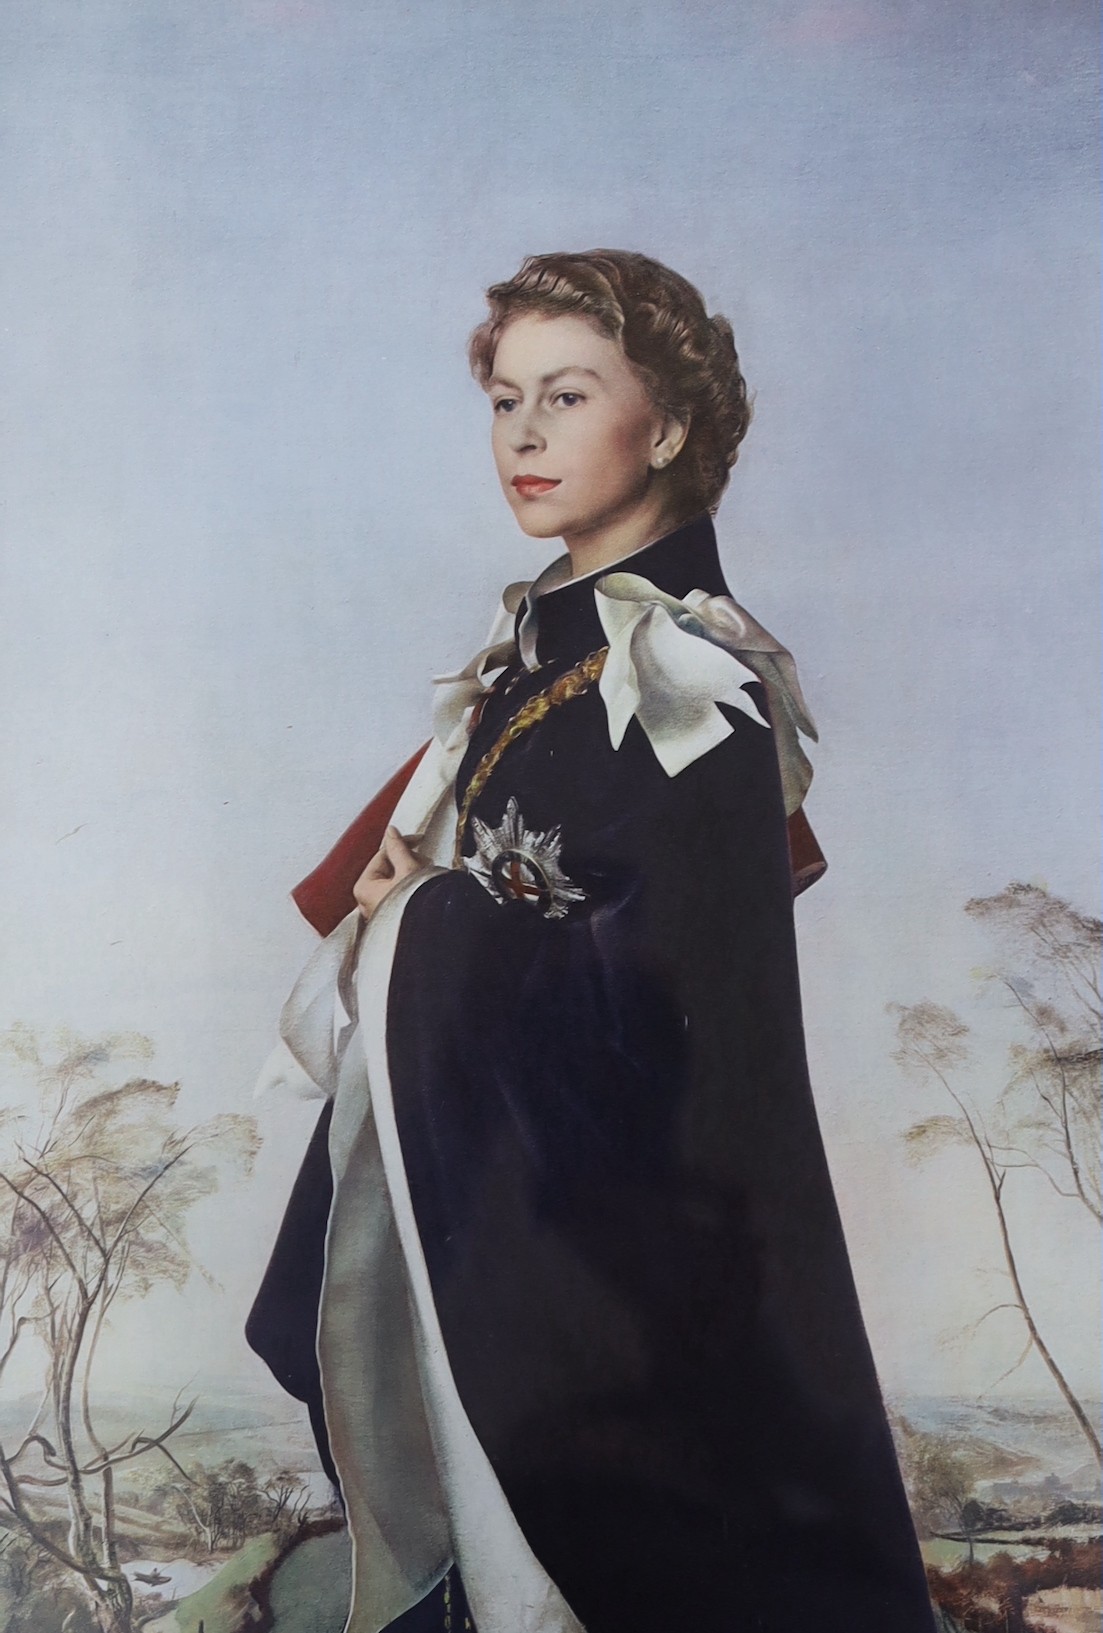 After Annigoni, colour print, Portrait of Queen Elizabeth II, 44 x 30cm